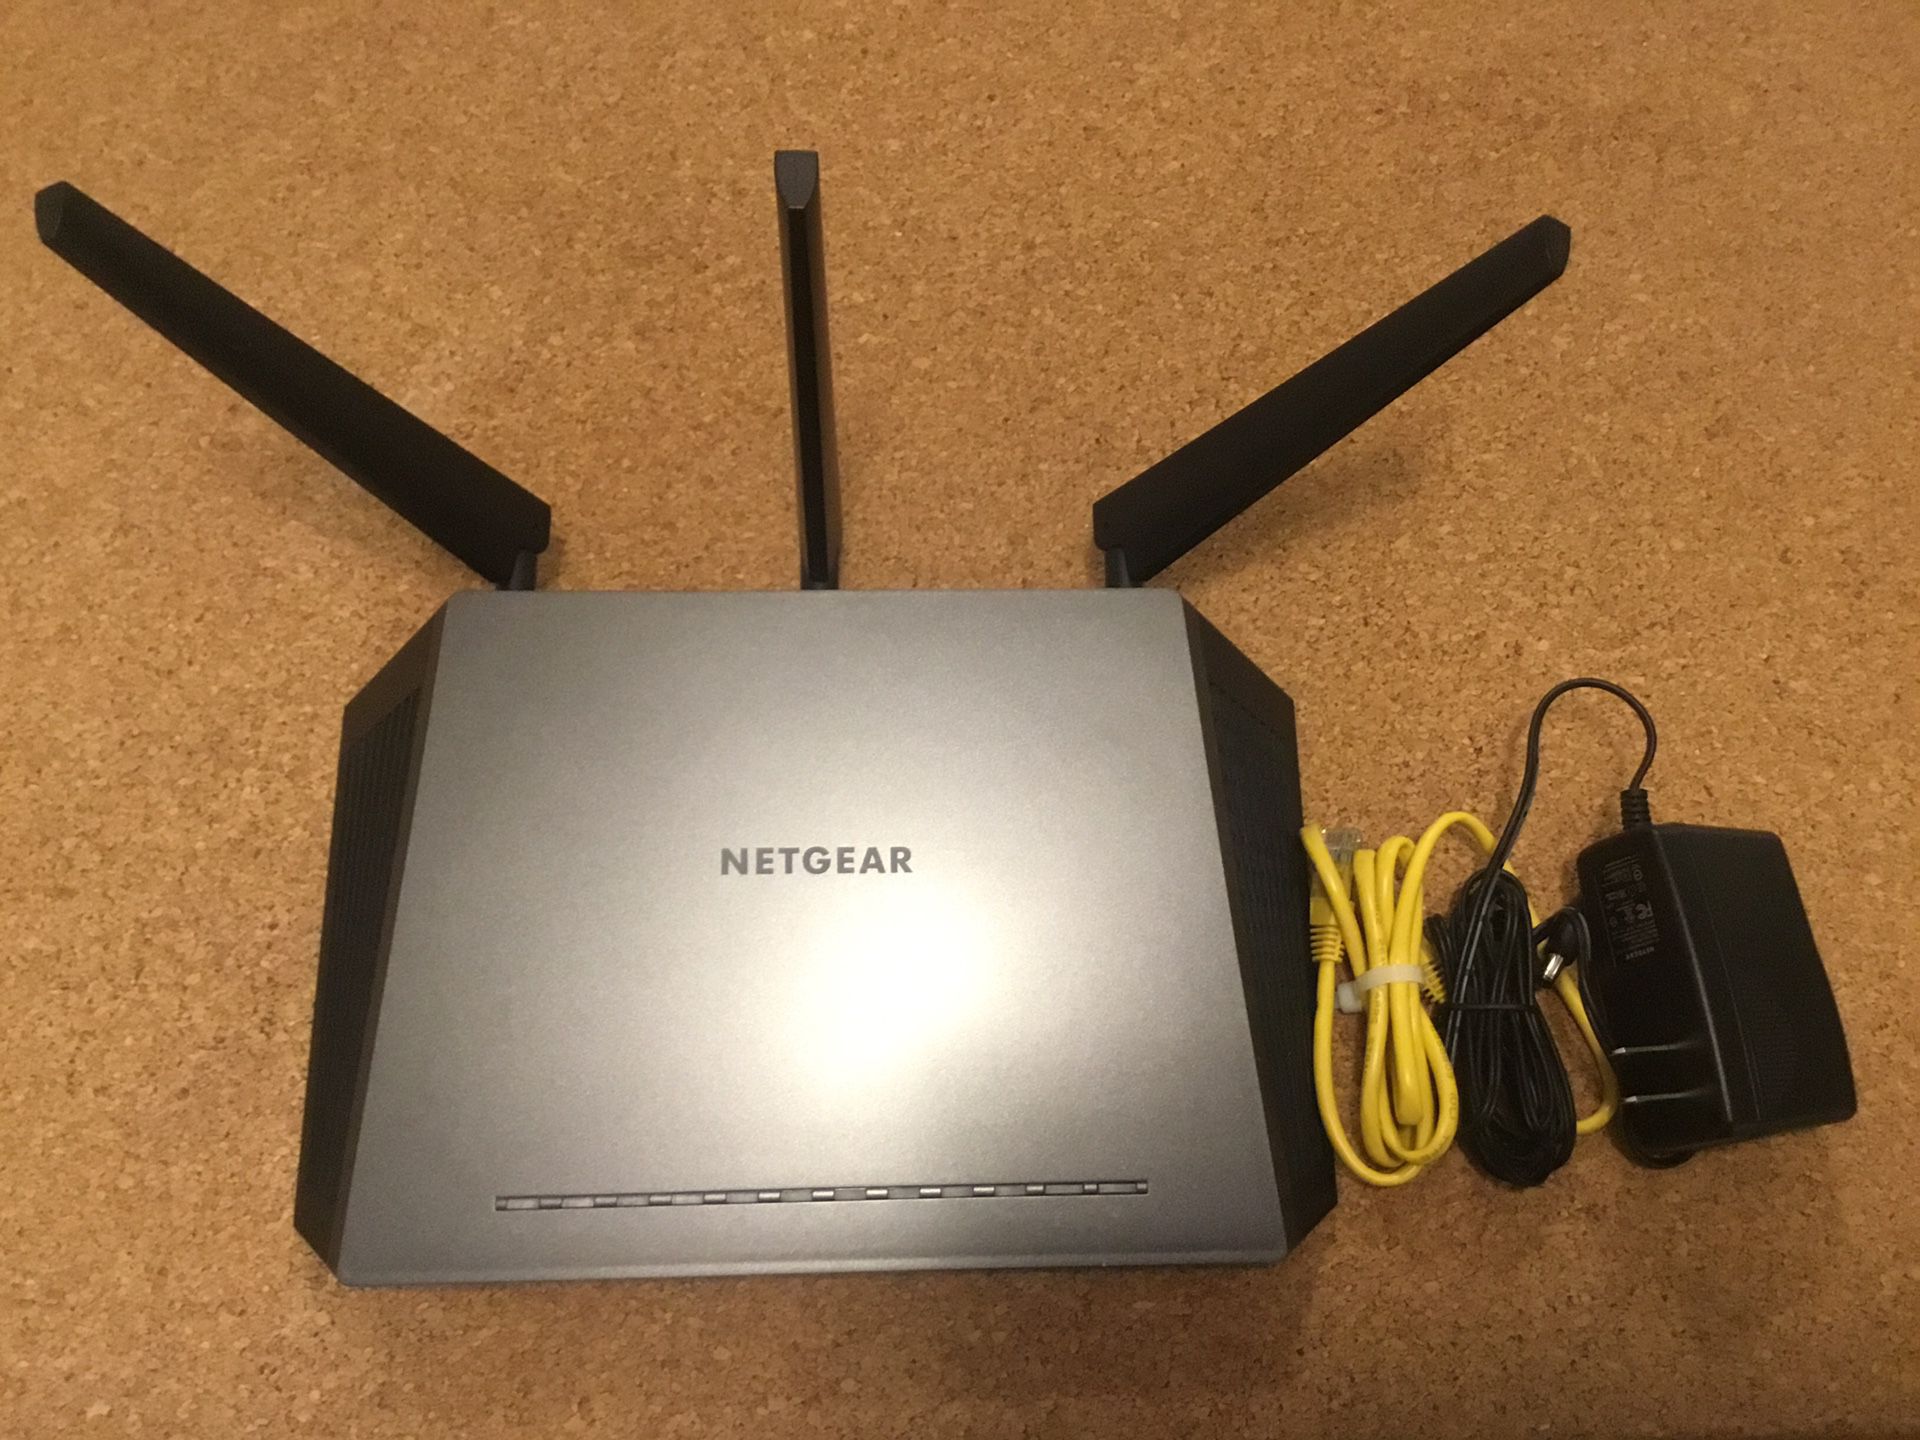 Netgear Nighthawk Router - AC1900 - Model: R7000